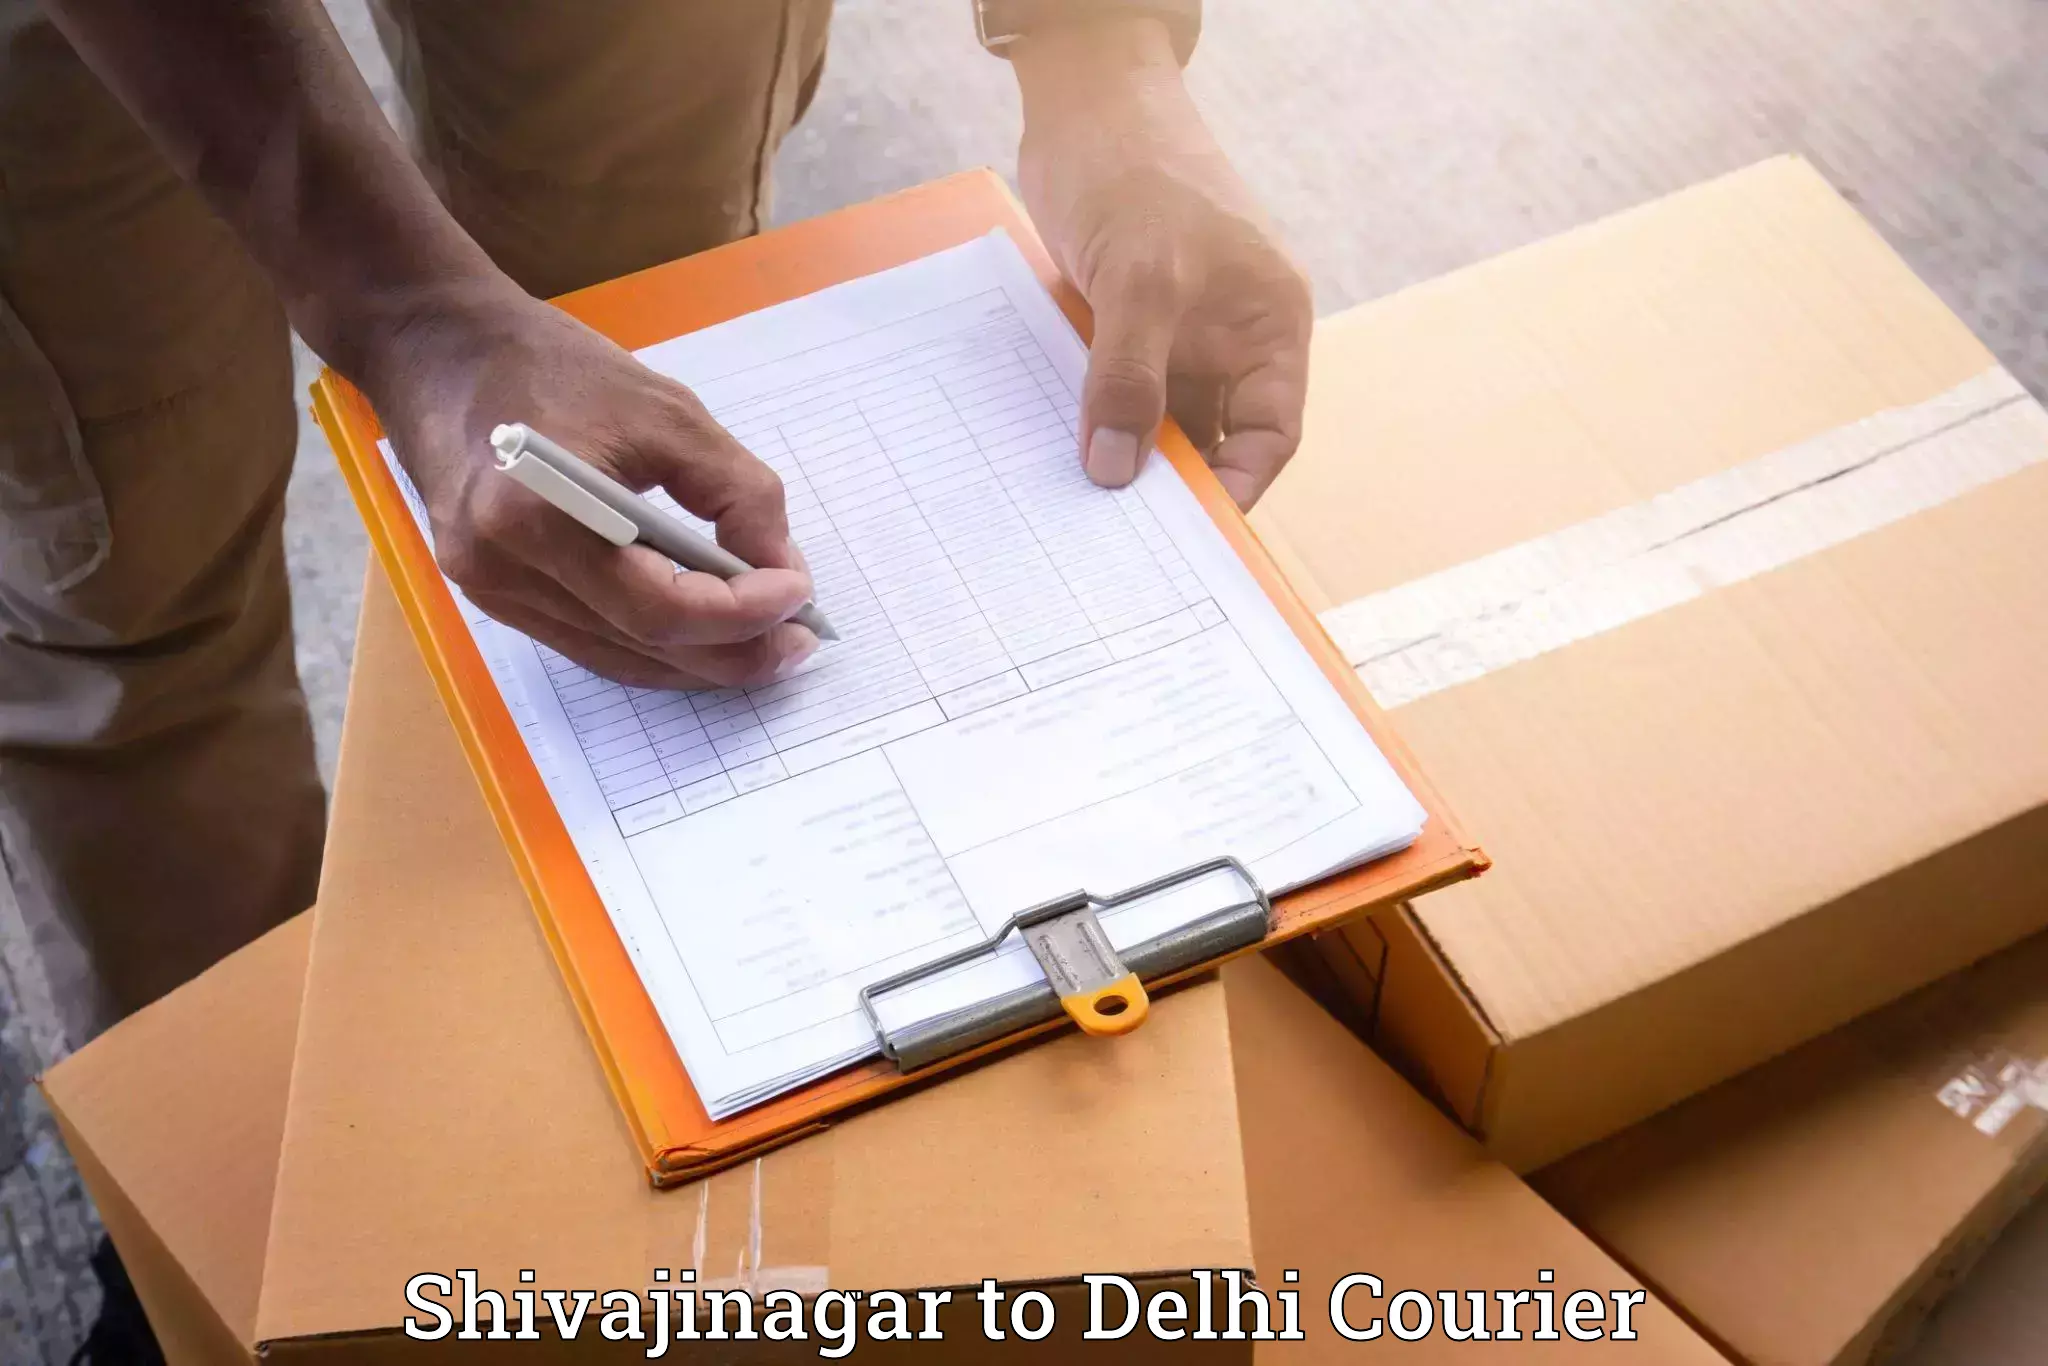 Furniture transport professionals Shivajinagar to Delhi